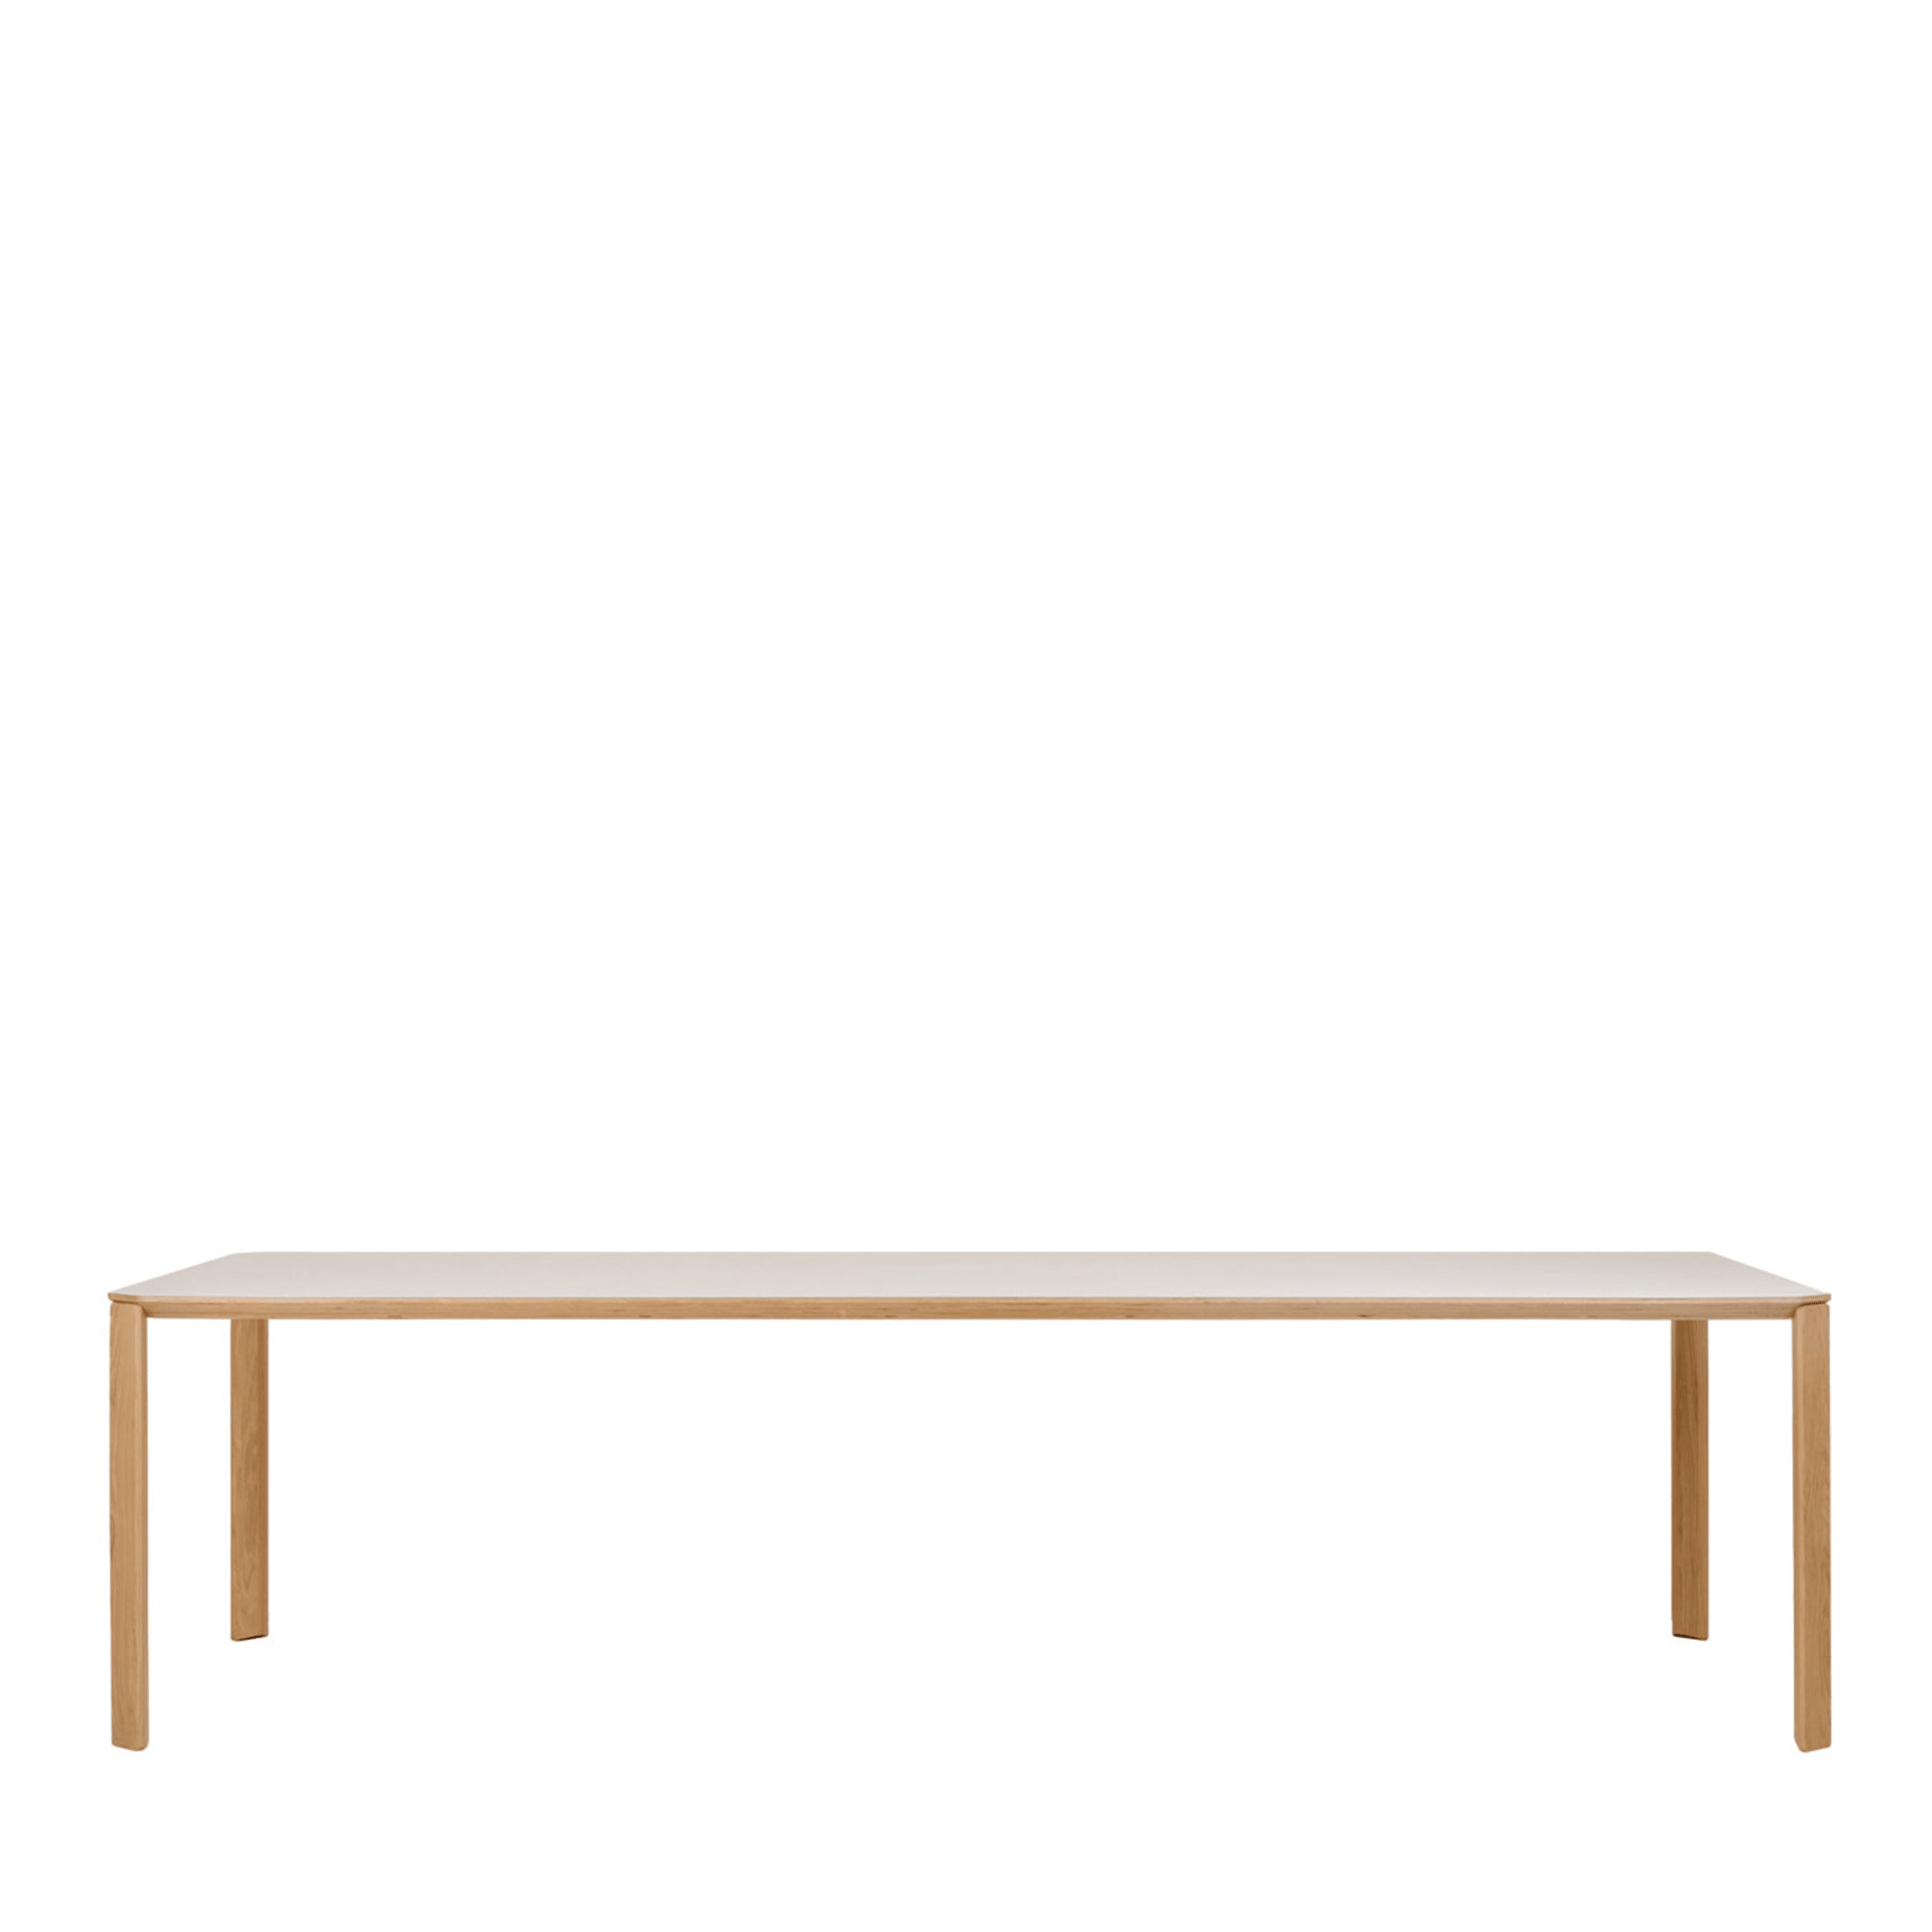 Ermete White Narrow XL Rectangular Table  - Main view